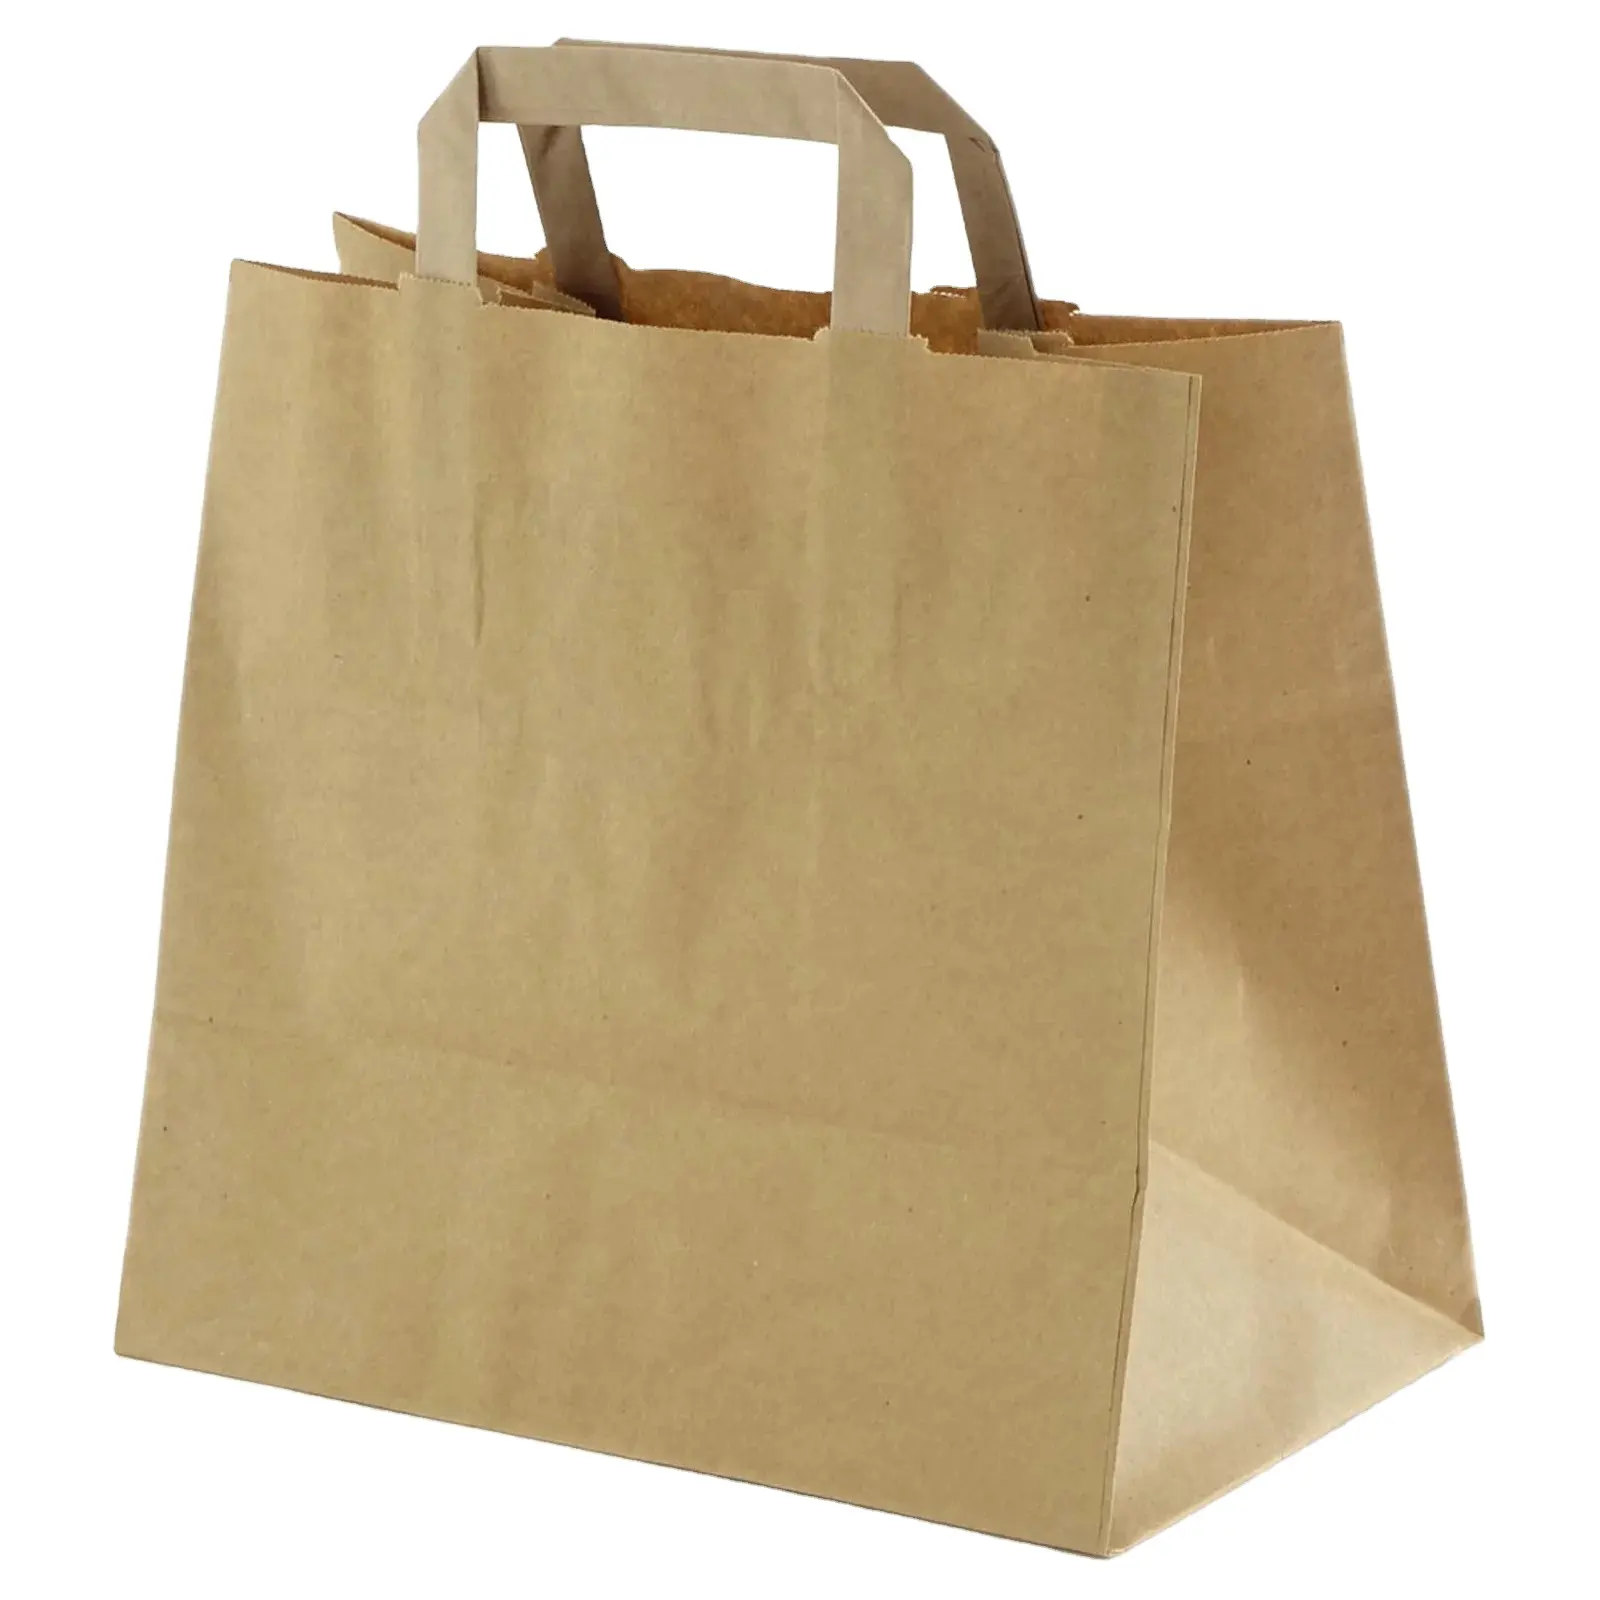 가장 큰 통관 일 맞춤형 인쇄 로고 캐리어 크래프트 종이 가방 레스토랑 음식 배달 포장 친환경 소재